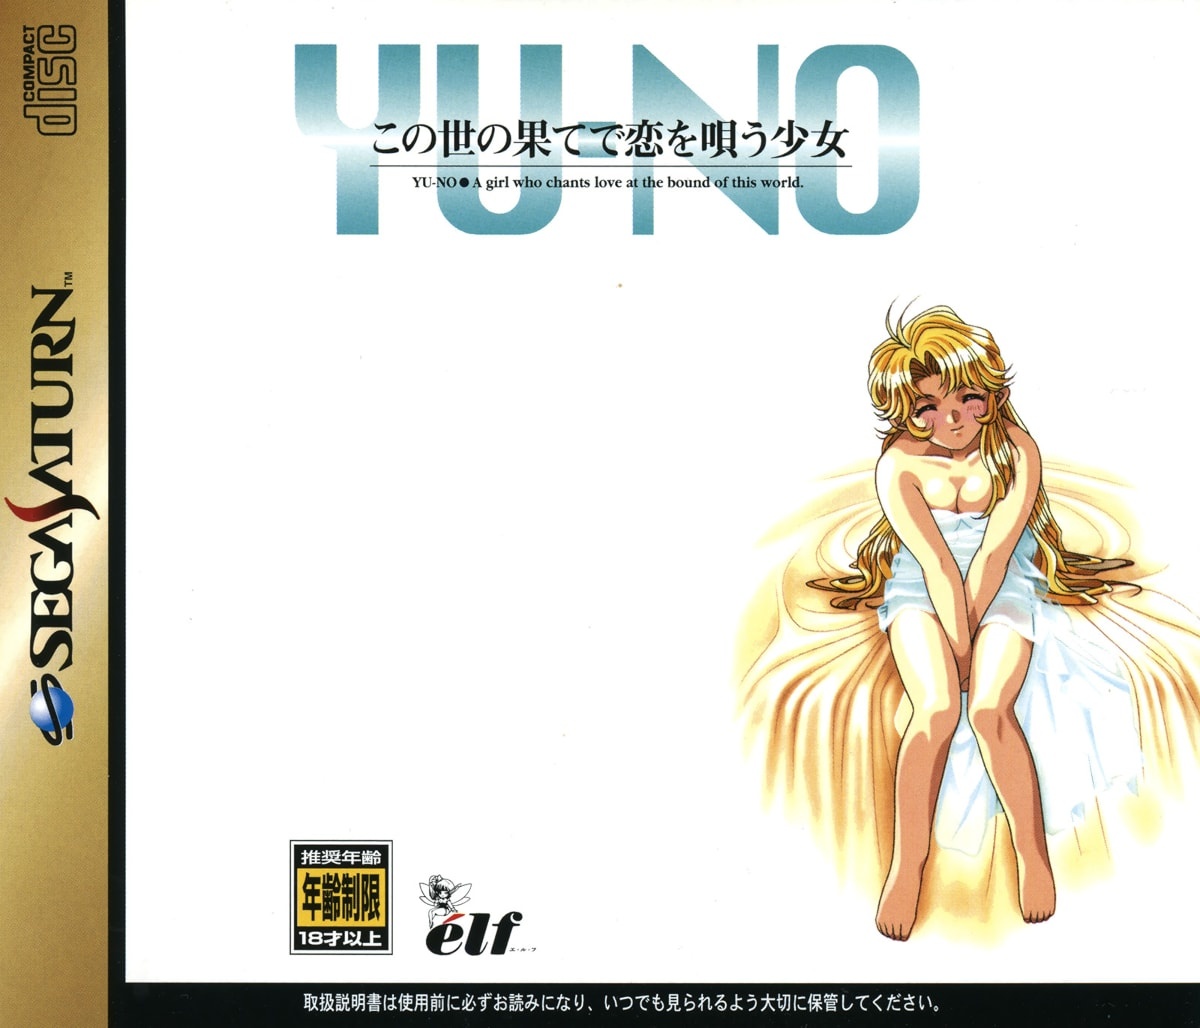 Capa do jogo Kono Yo no Hate de Koi o Utau Shoujo Yu-No